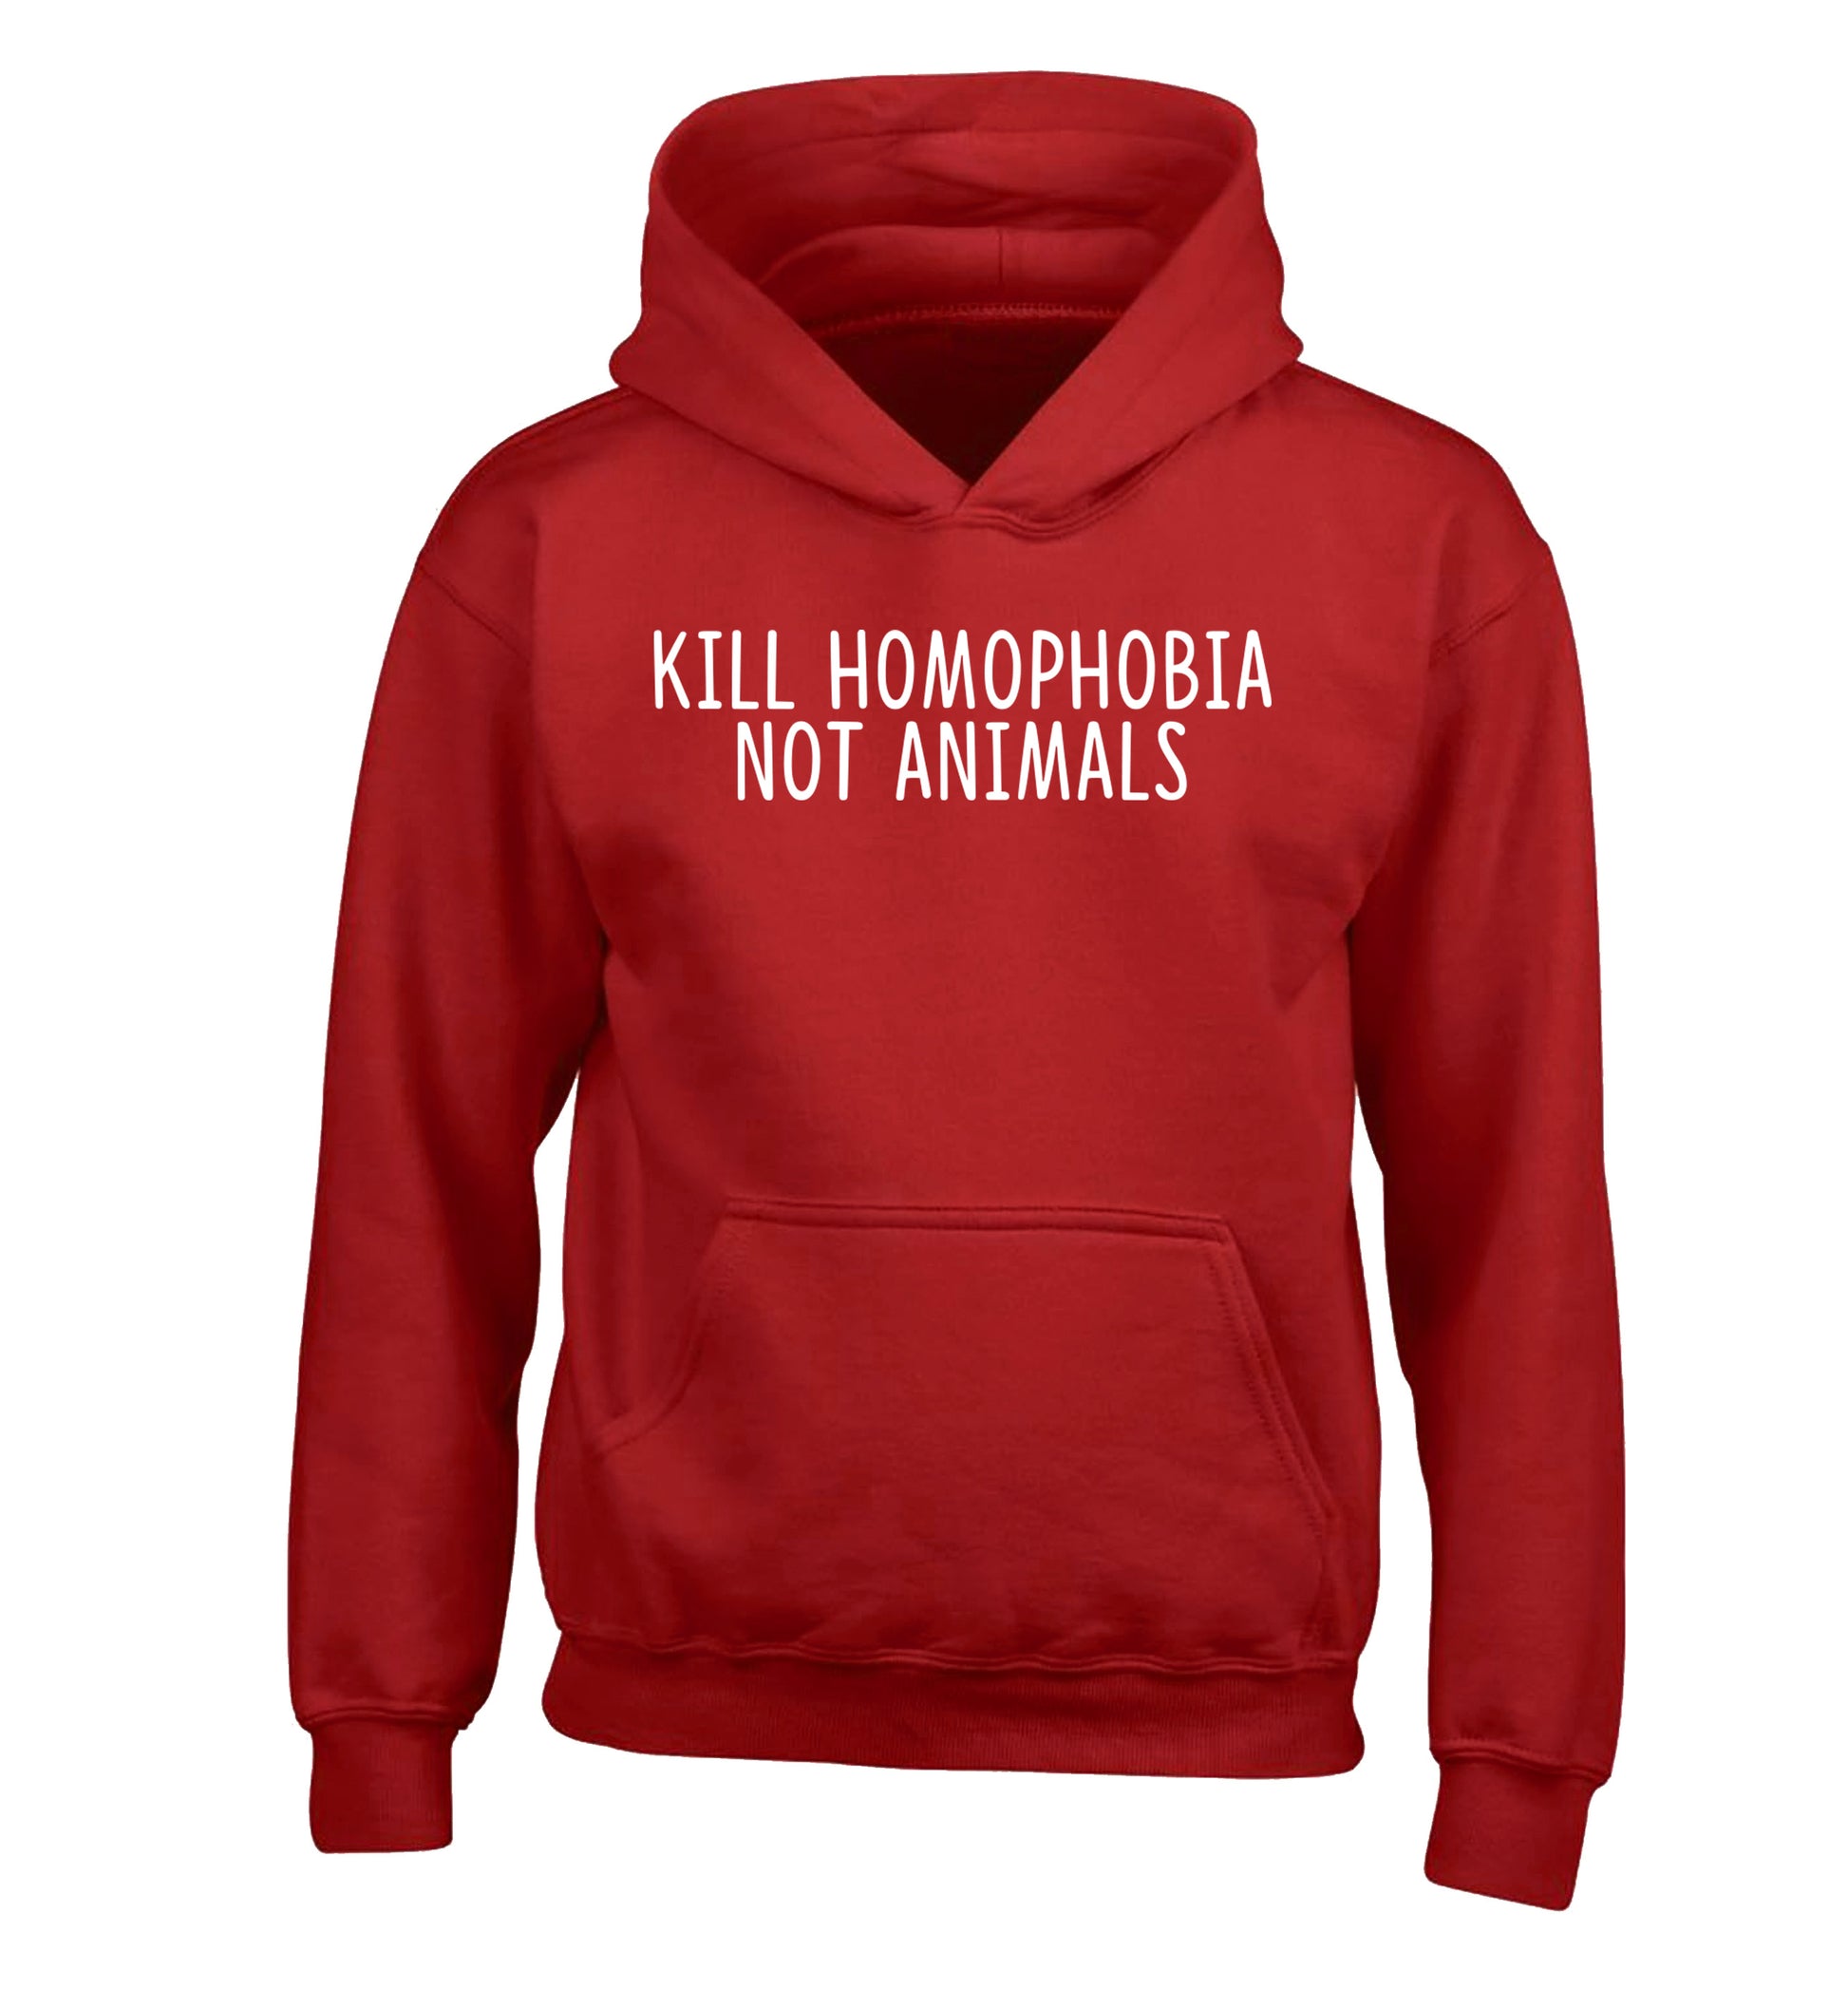 Kill Homophobia Not Animals children's red hoodie 12-13 Years